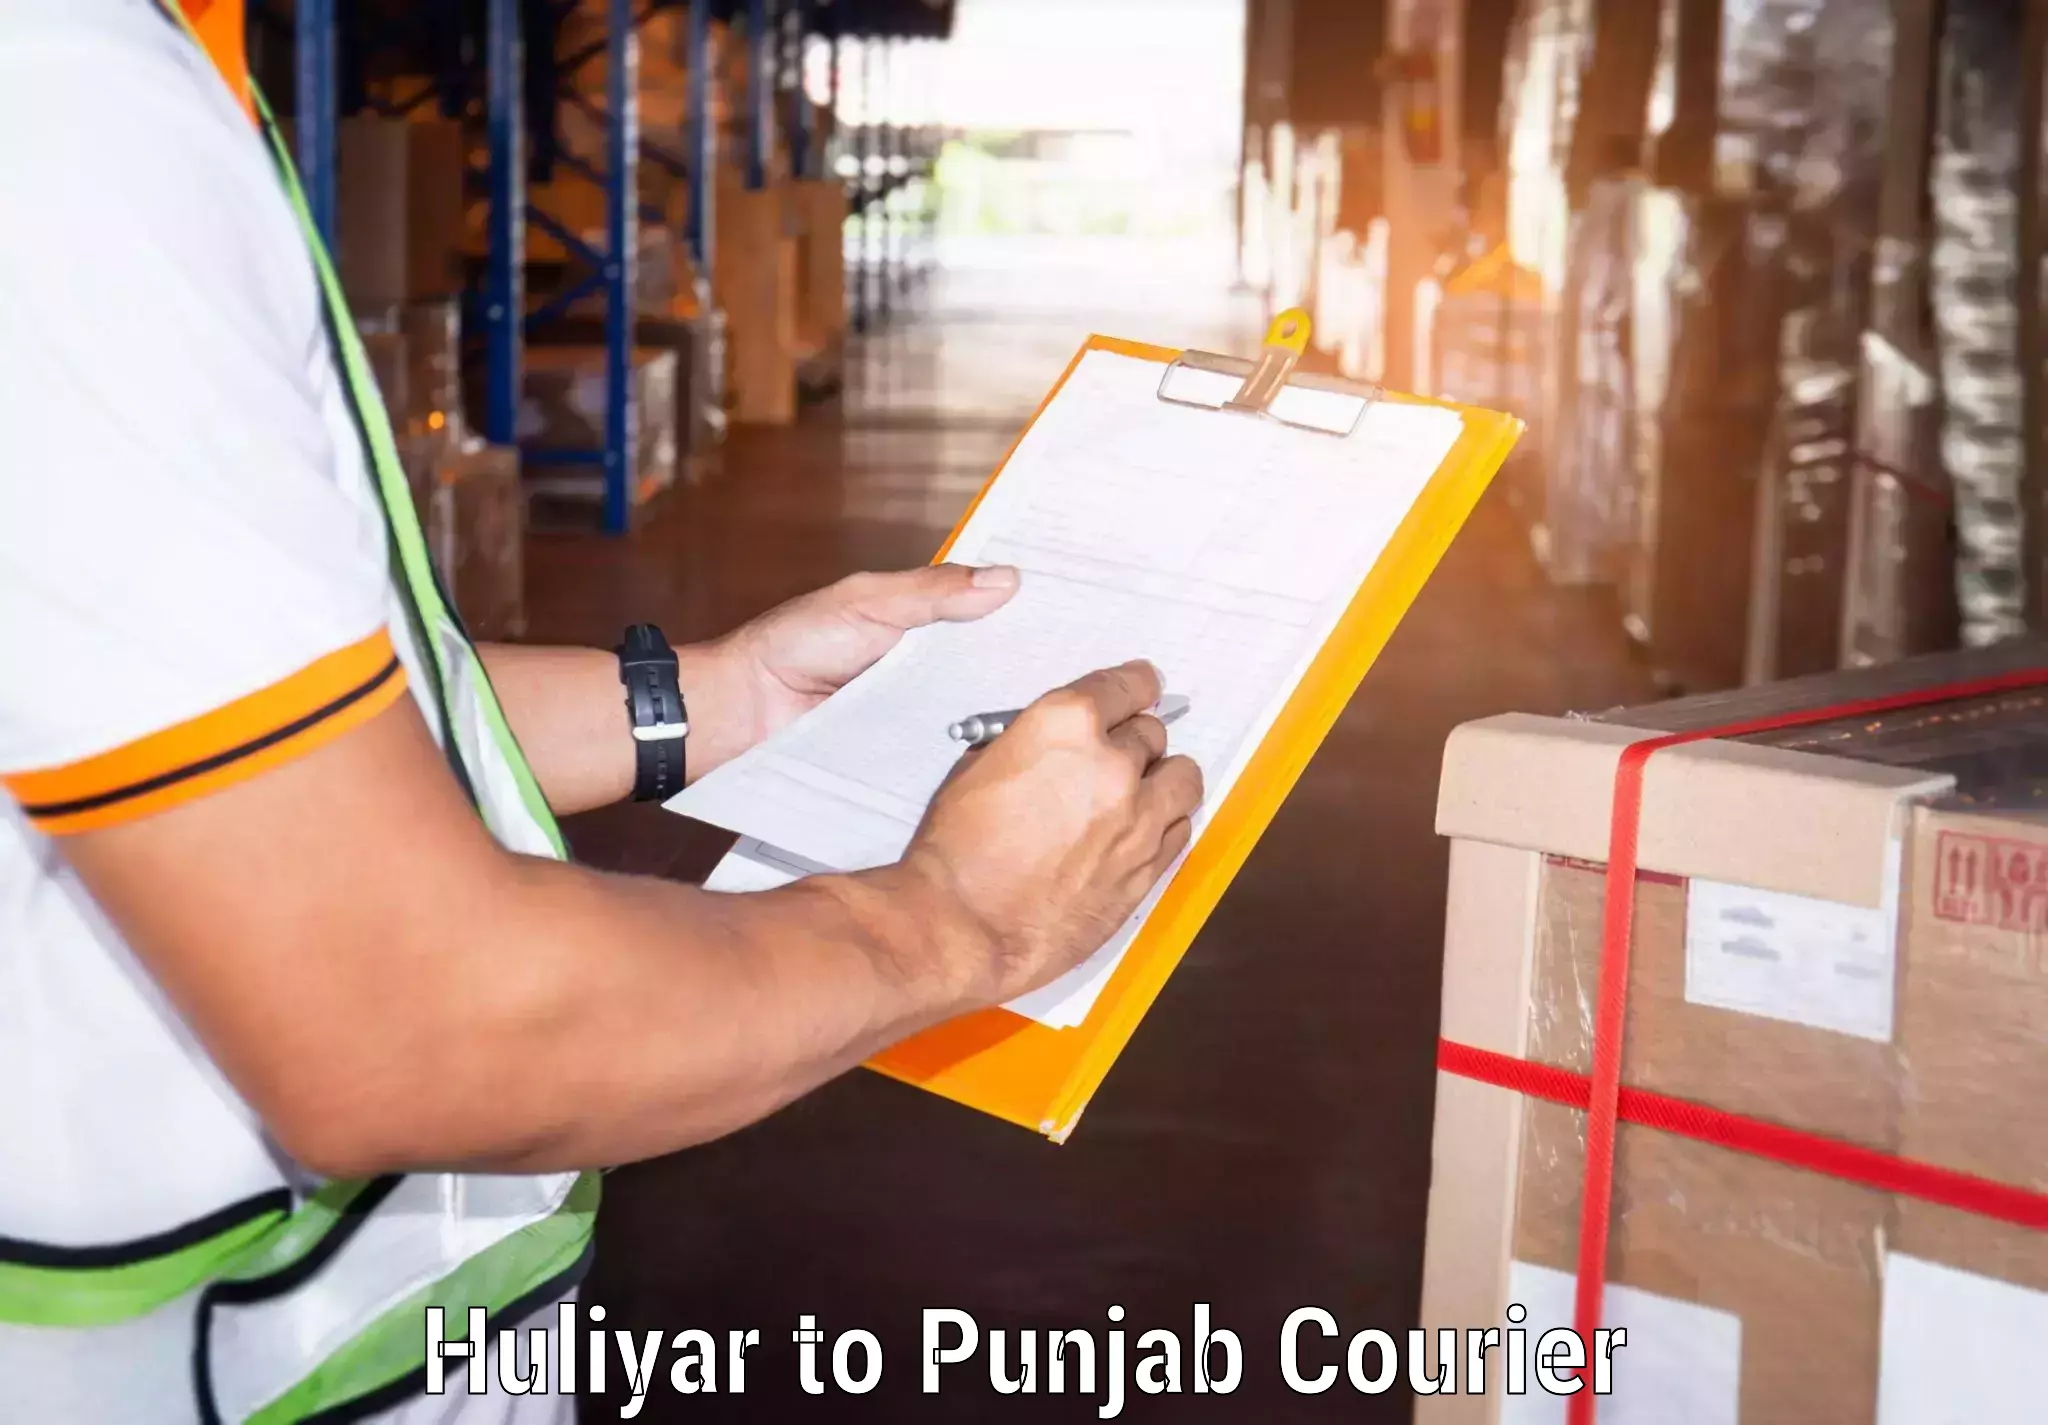 Punctual parcel services Huliyar to Zirakpur